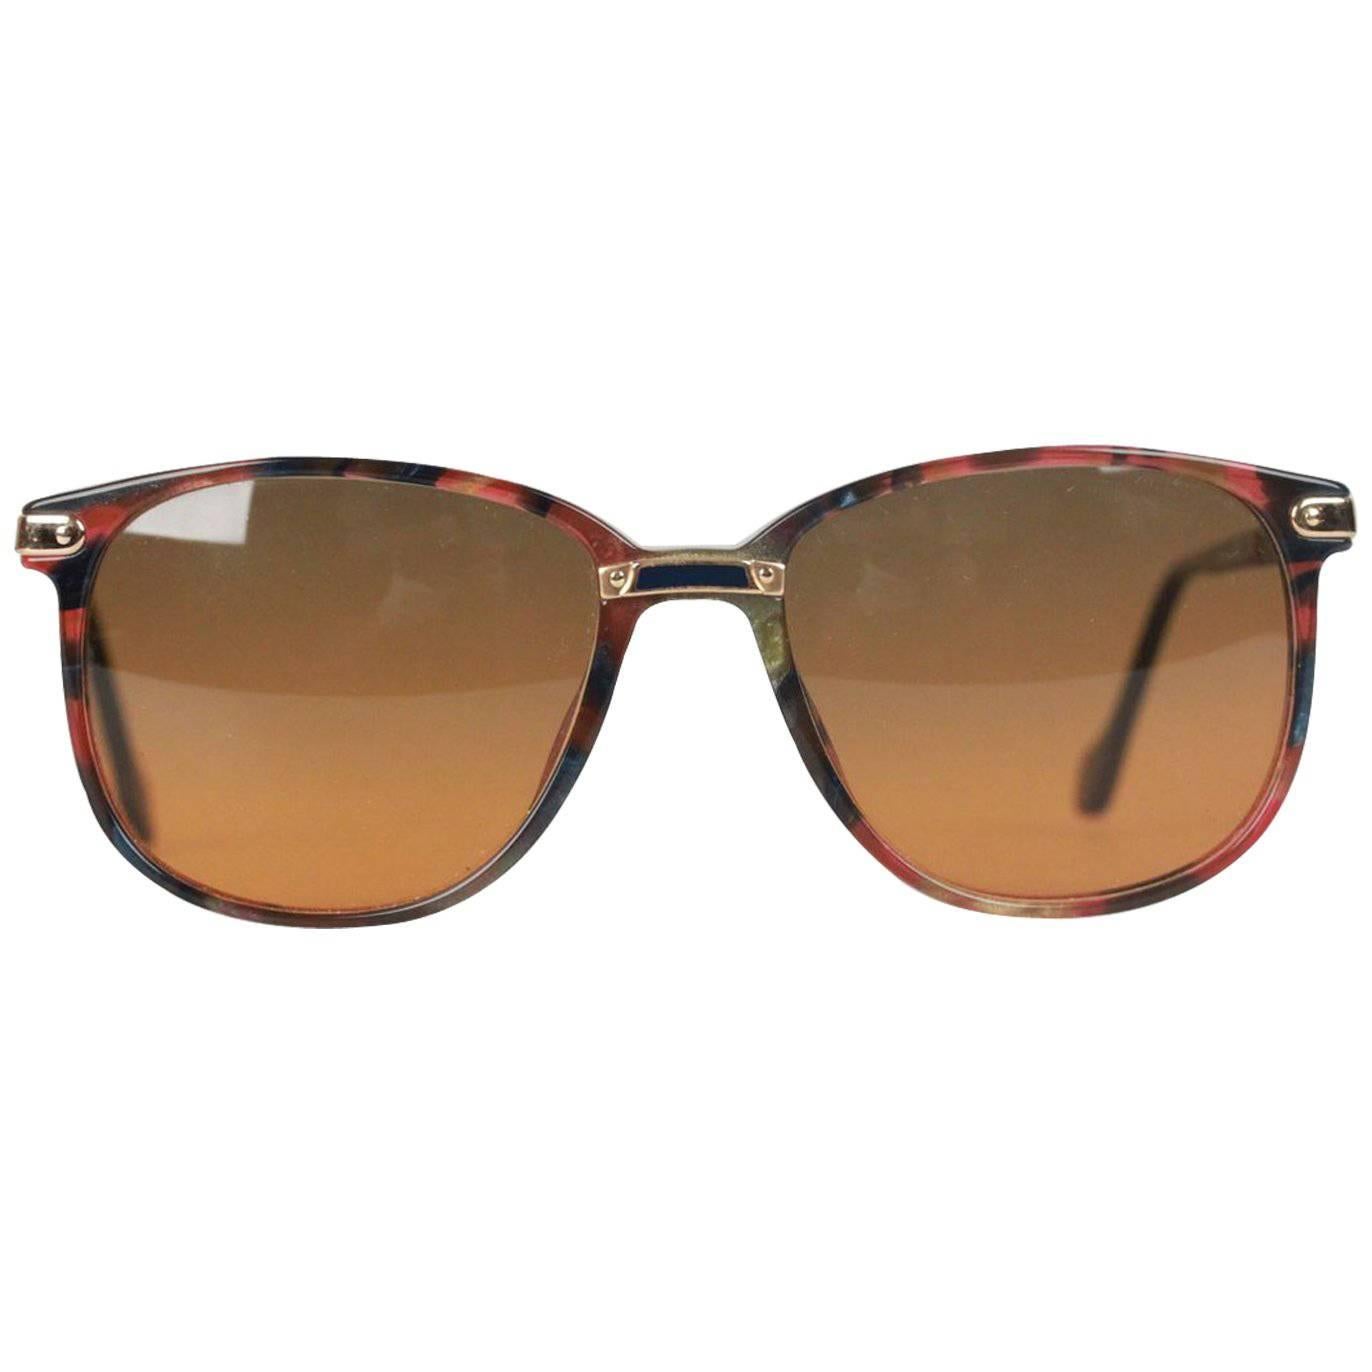 S.T DUPONT Brown Sunglasses M D1010 /20 C 3270 53/17 145